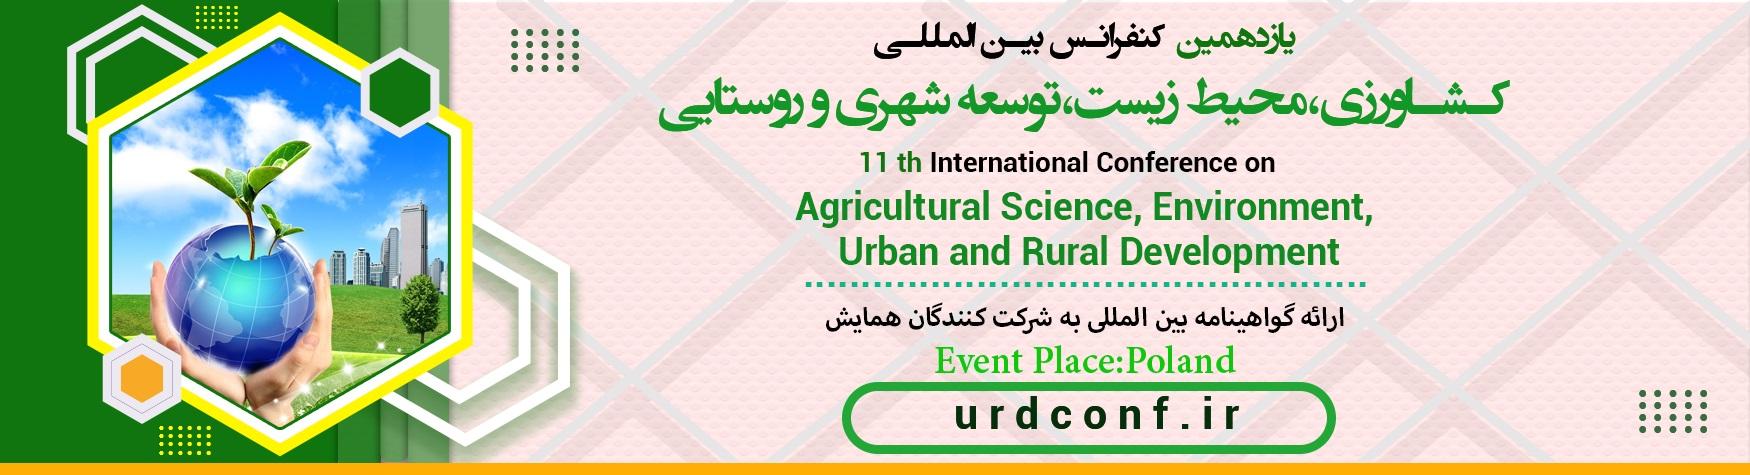 کنفرانس بین المللی علوم کشاورزی،محیط زیست،توسعه شهری و روستایی